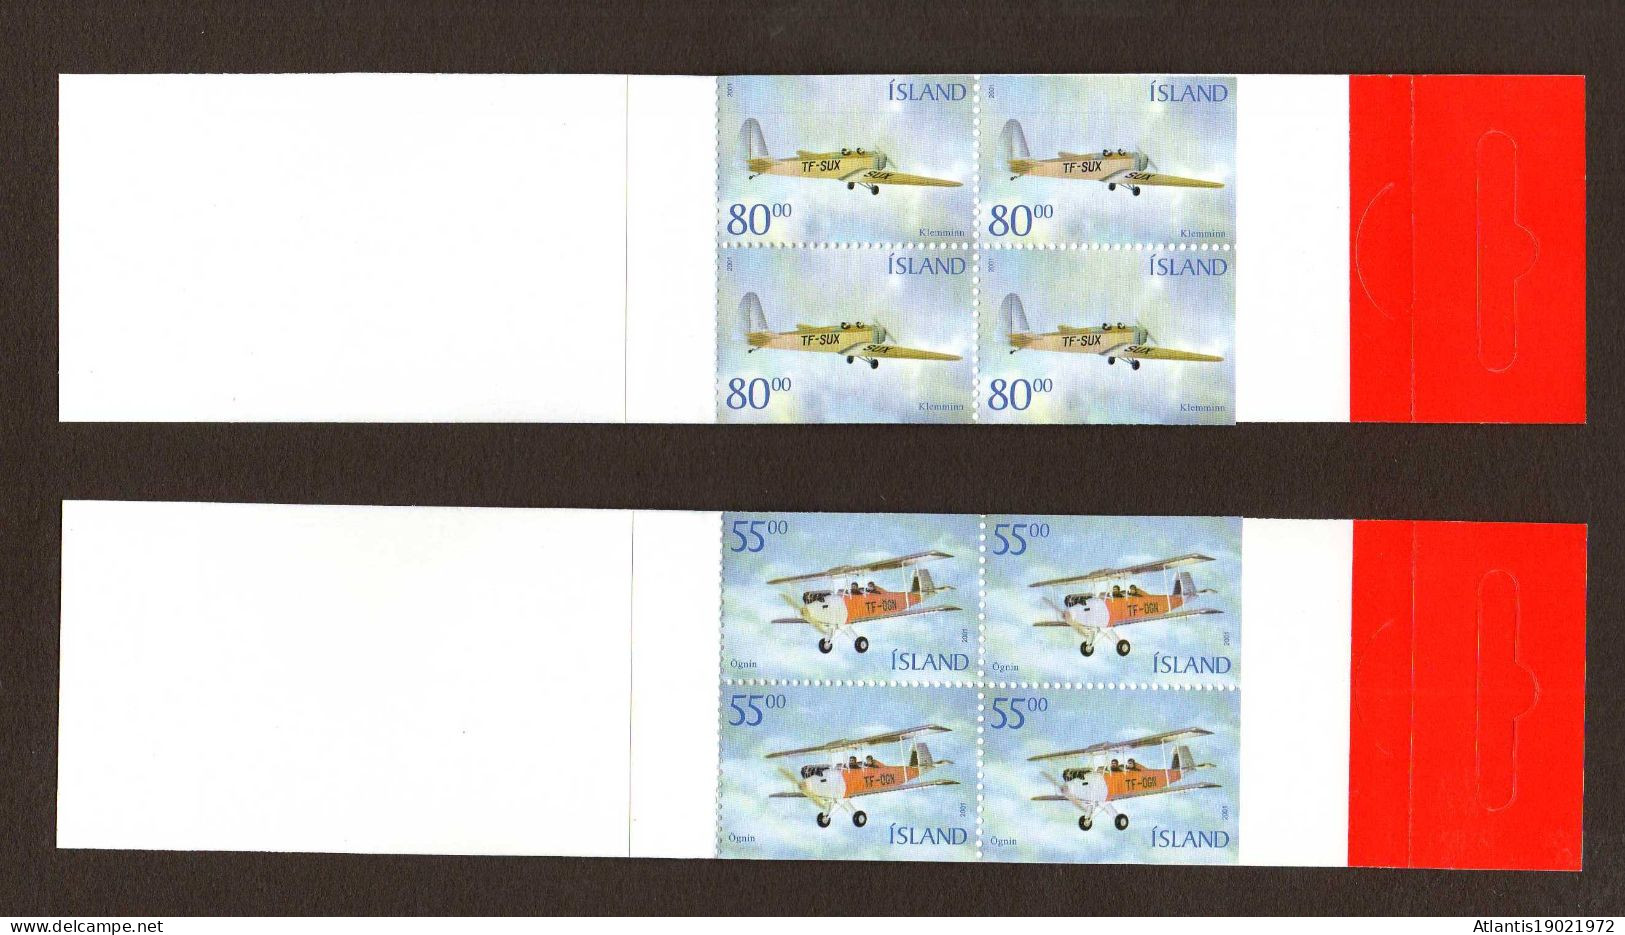 2 MARKENHEFTCHEN ISLAND HISTORISCHE FLUGZEUGE 2001 POSTFRISCH - Booklets